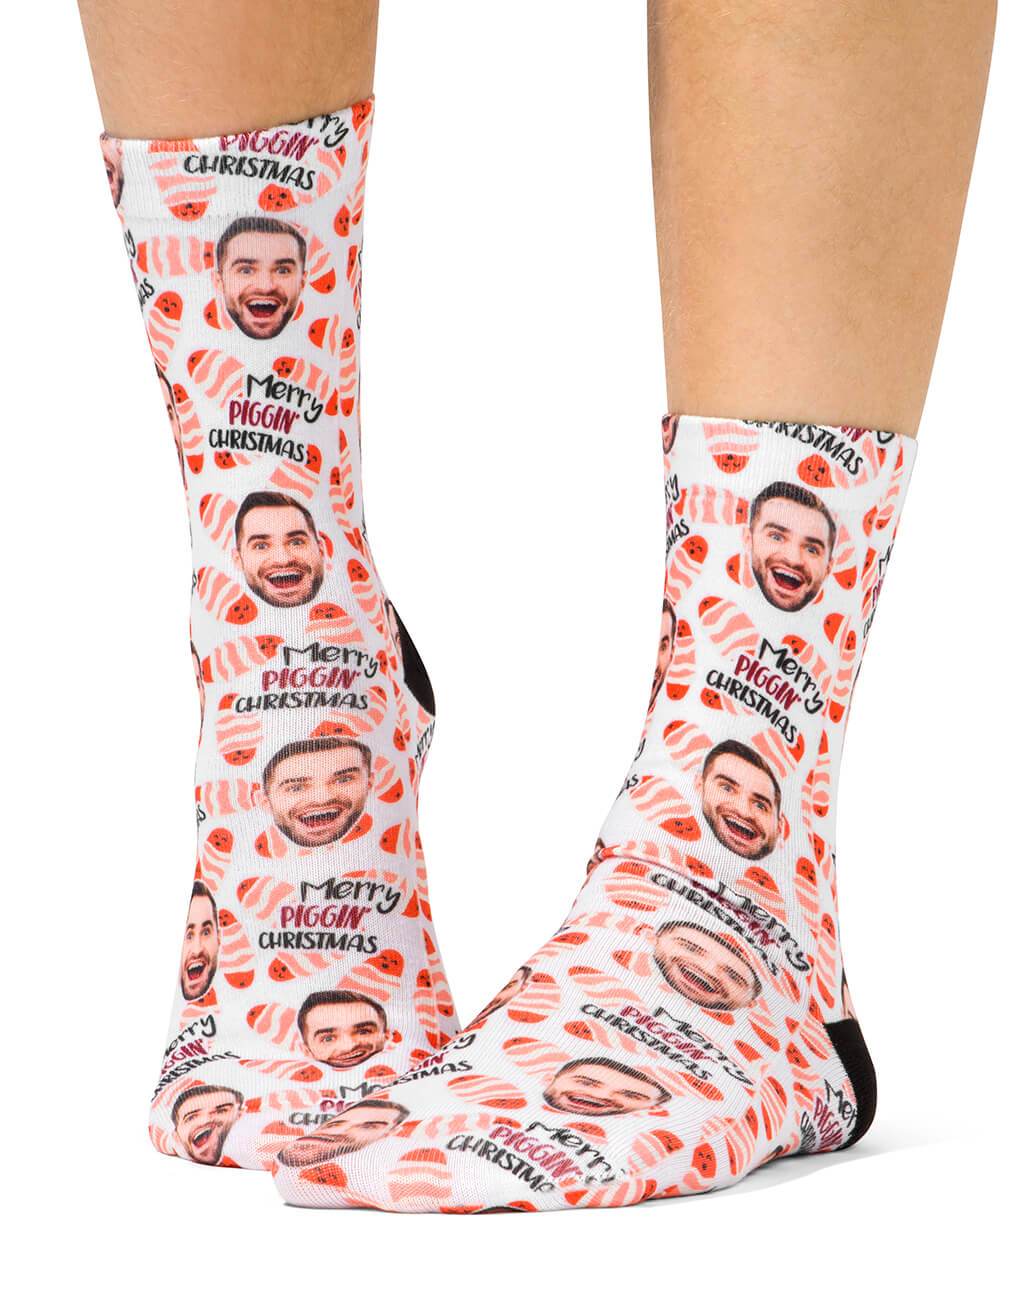 Merry Piggin' Christmas Custom Socks